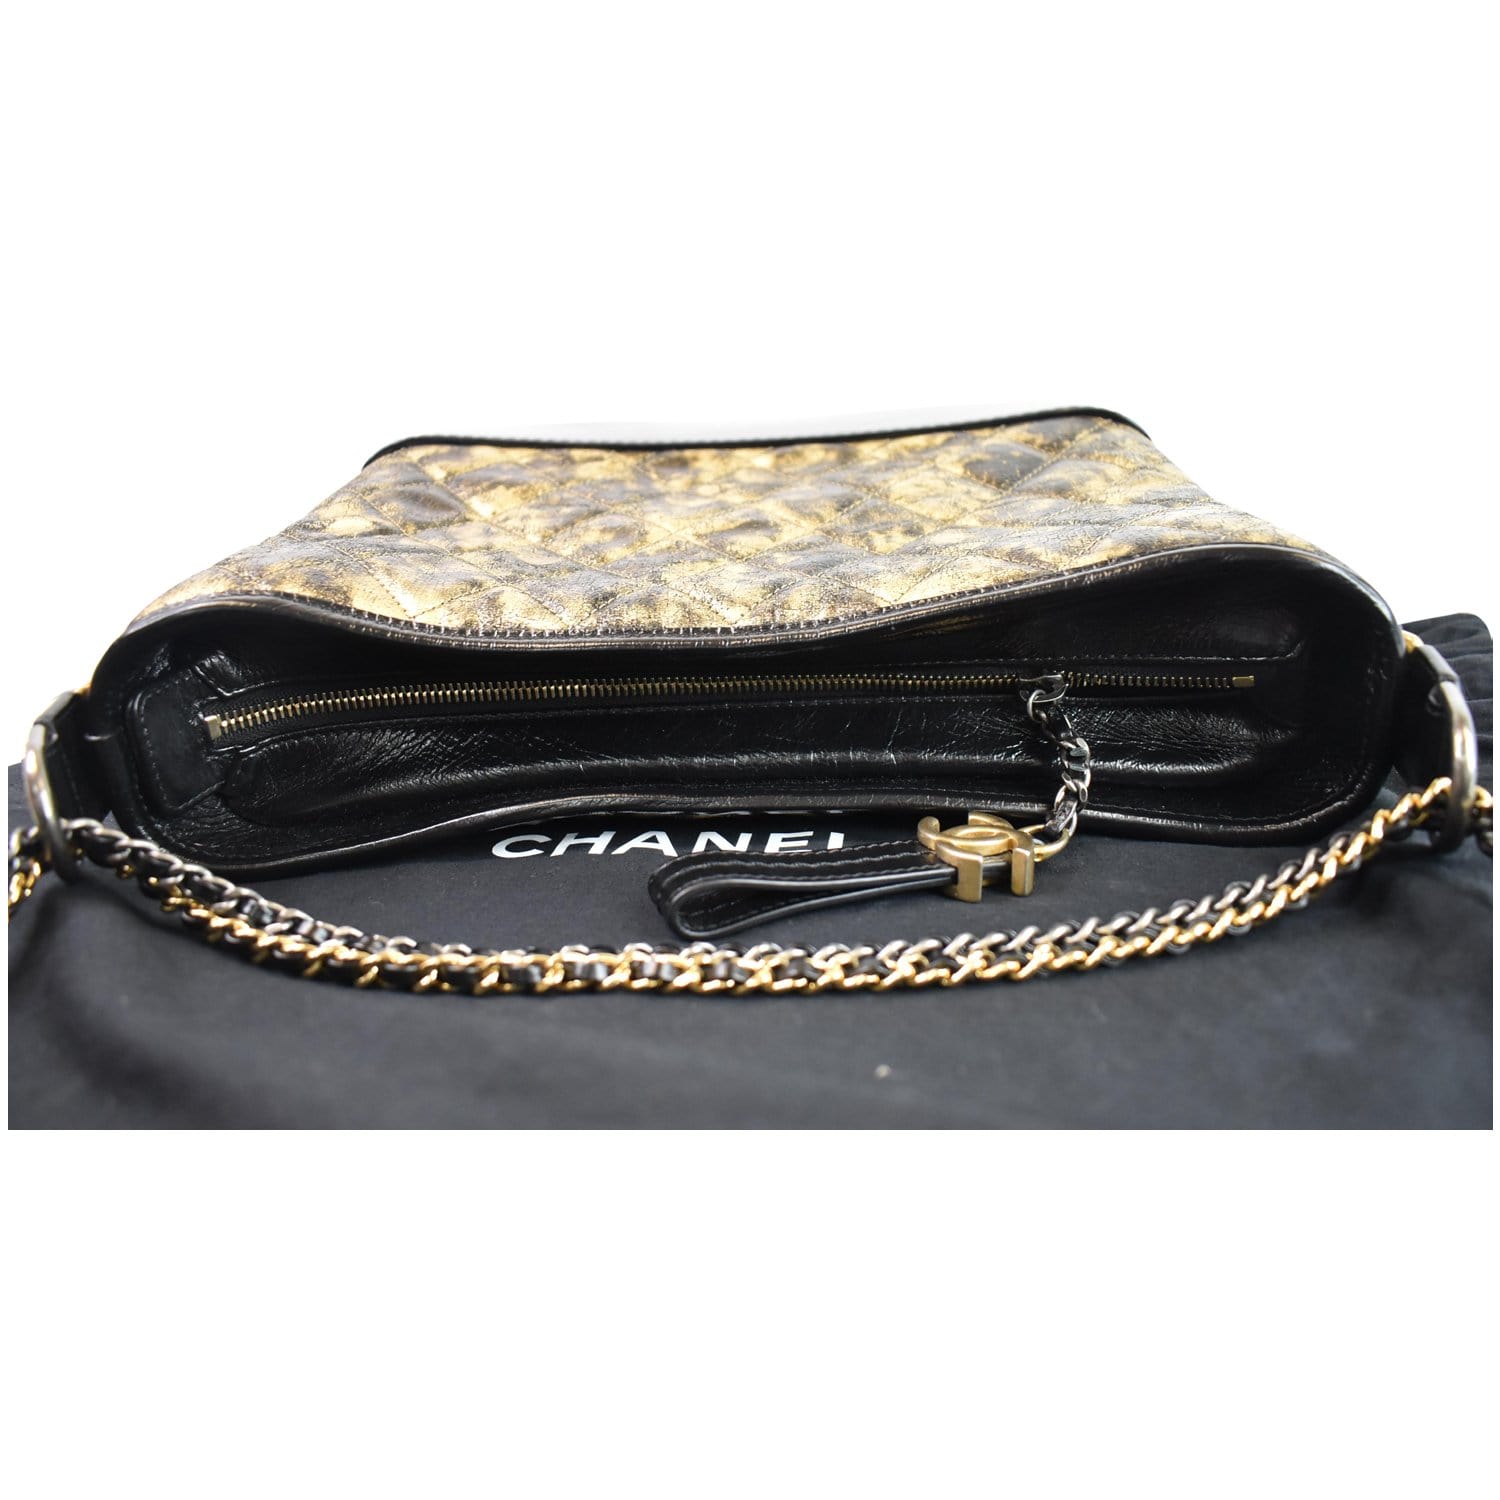 Chanel Gabrielle Clutch w/ Chain - Black Clutches, Handbags